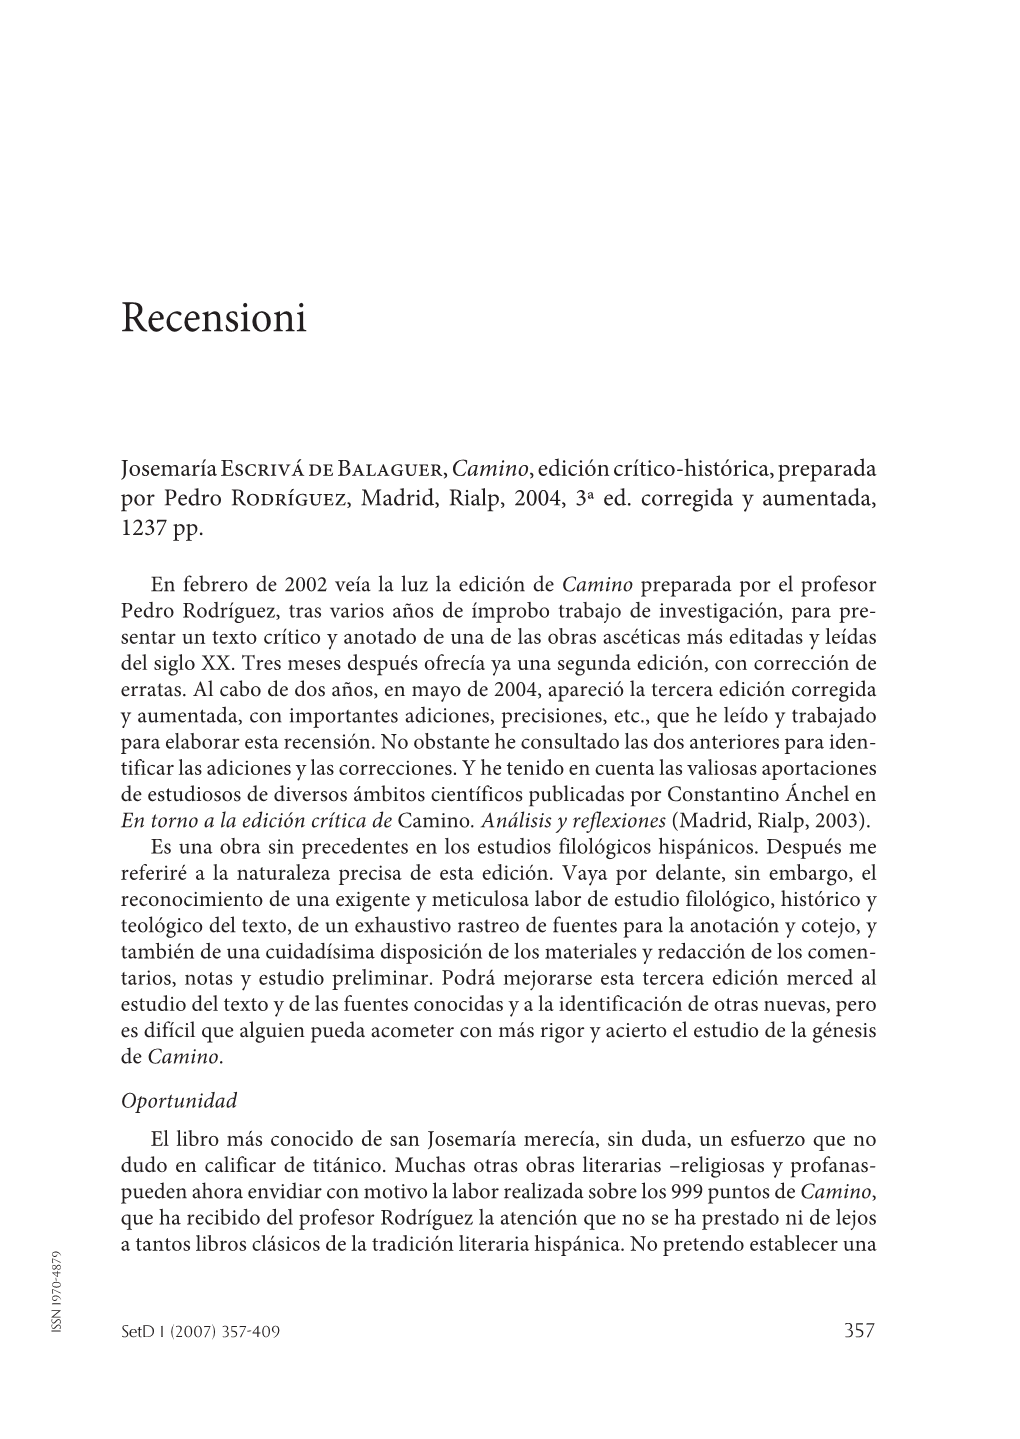 2007) 357-409 357 Recensioni Analogía Entre Los Textos Sino Entre Los Estudios